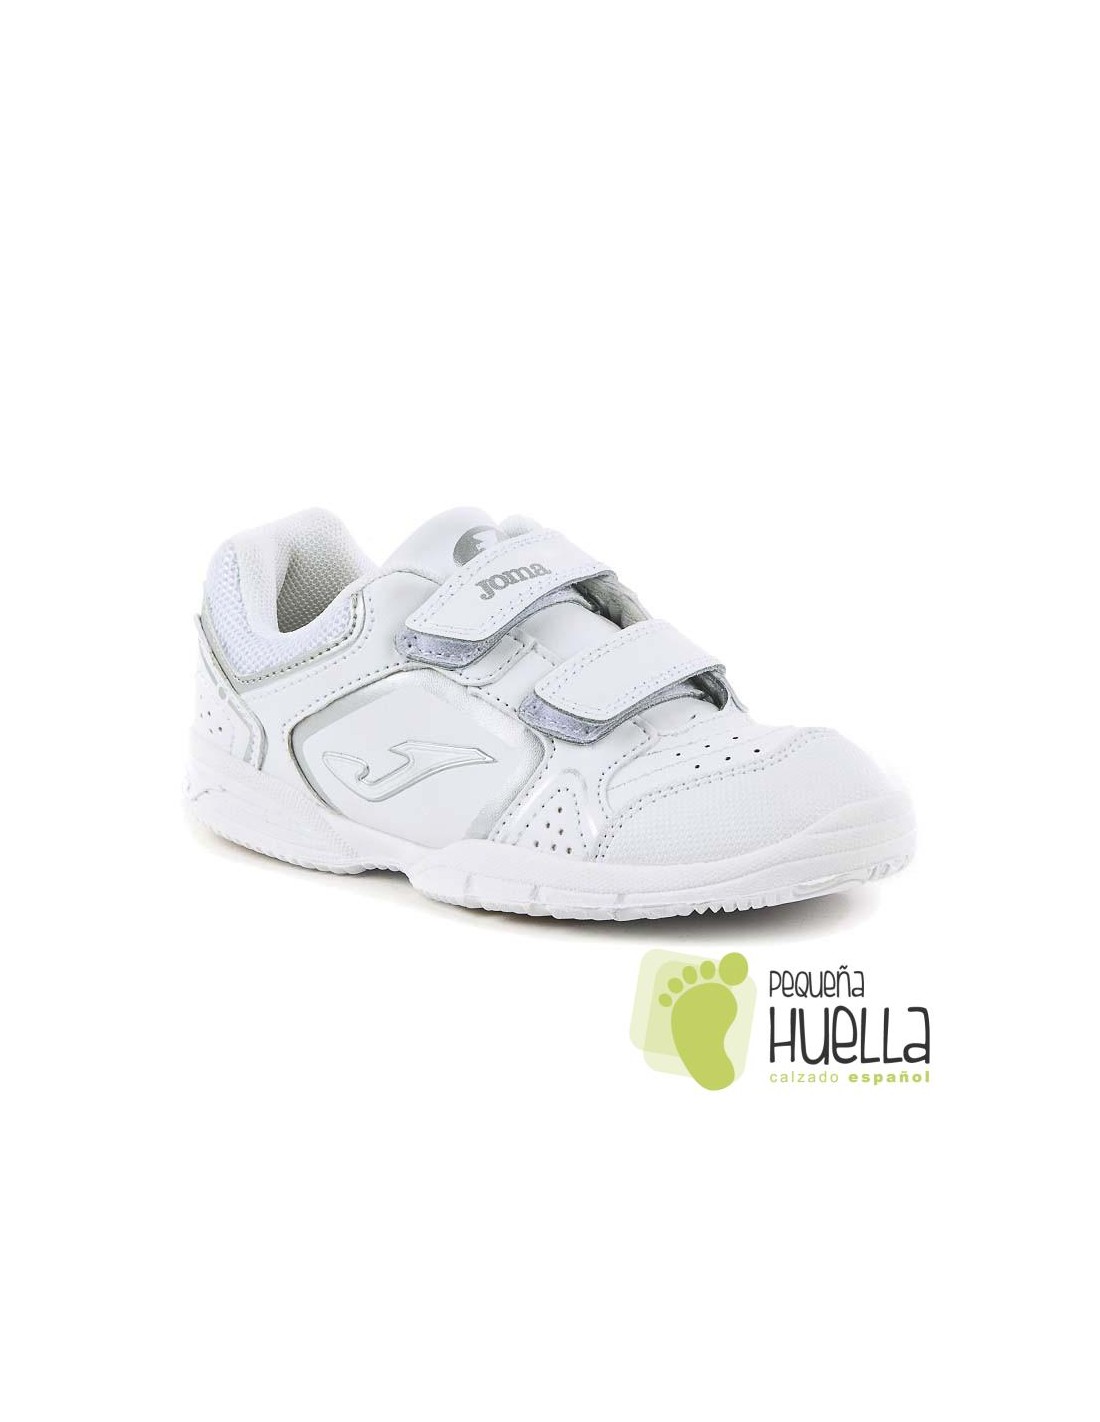 Zapatillas de deporte blancas para niños y niñas, zapatos